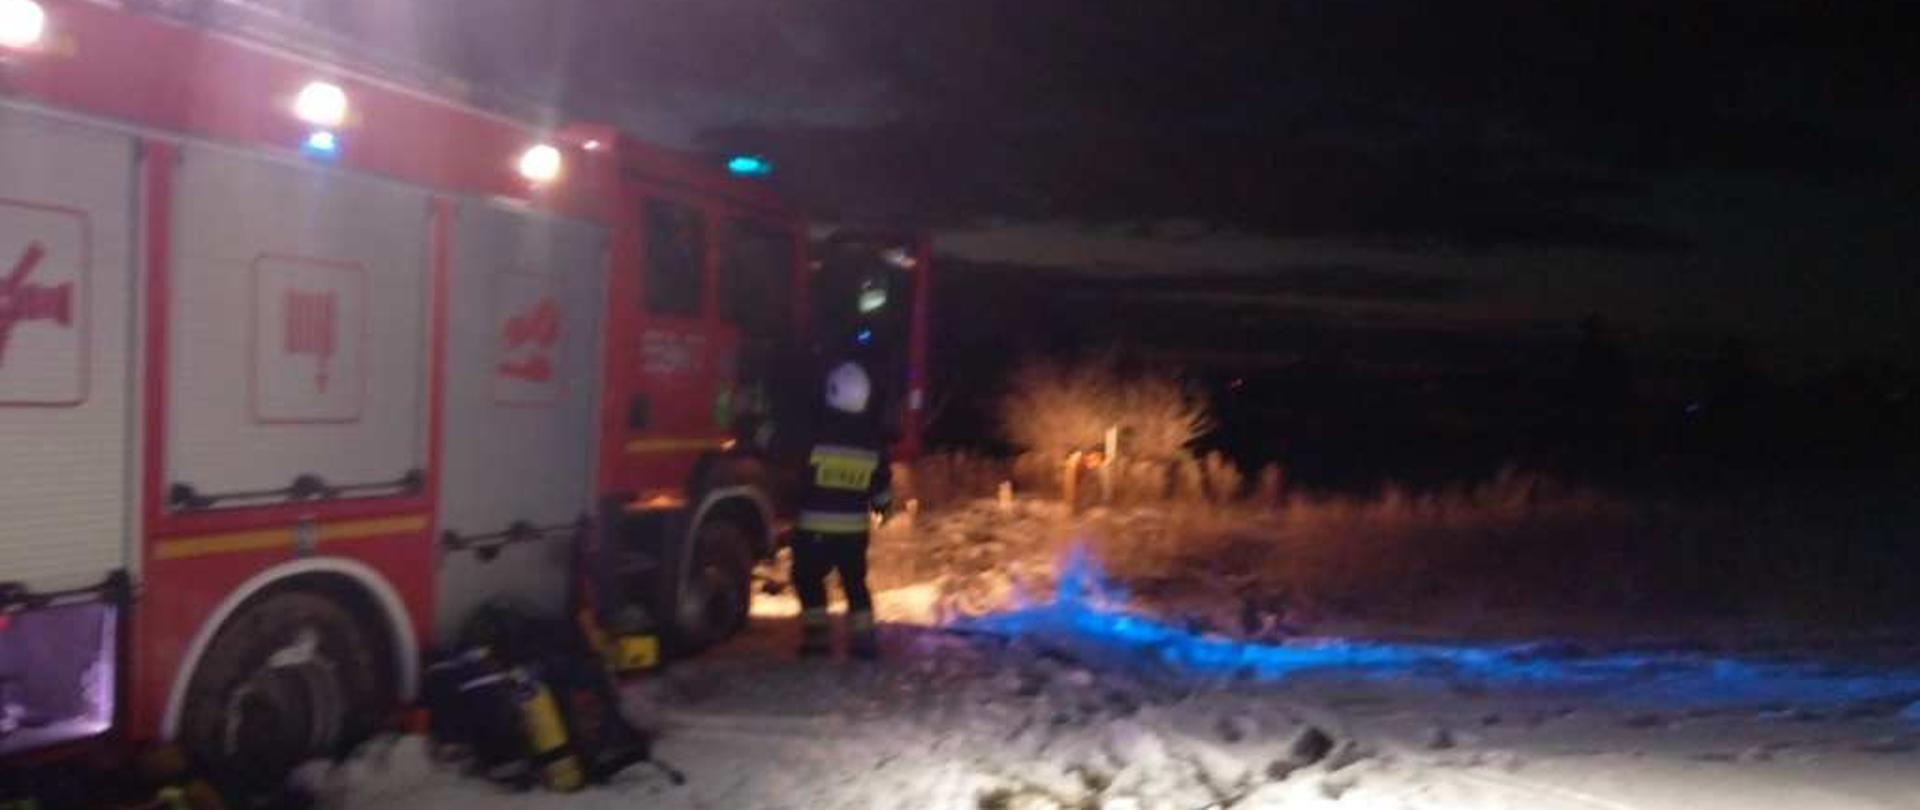 Zdjęcie przedstawia pojazd pożarniczy na miejscu pożaru.